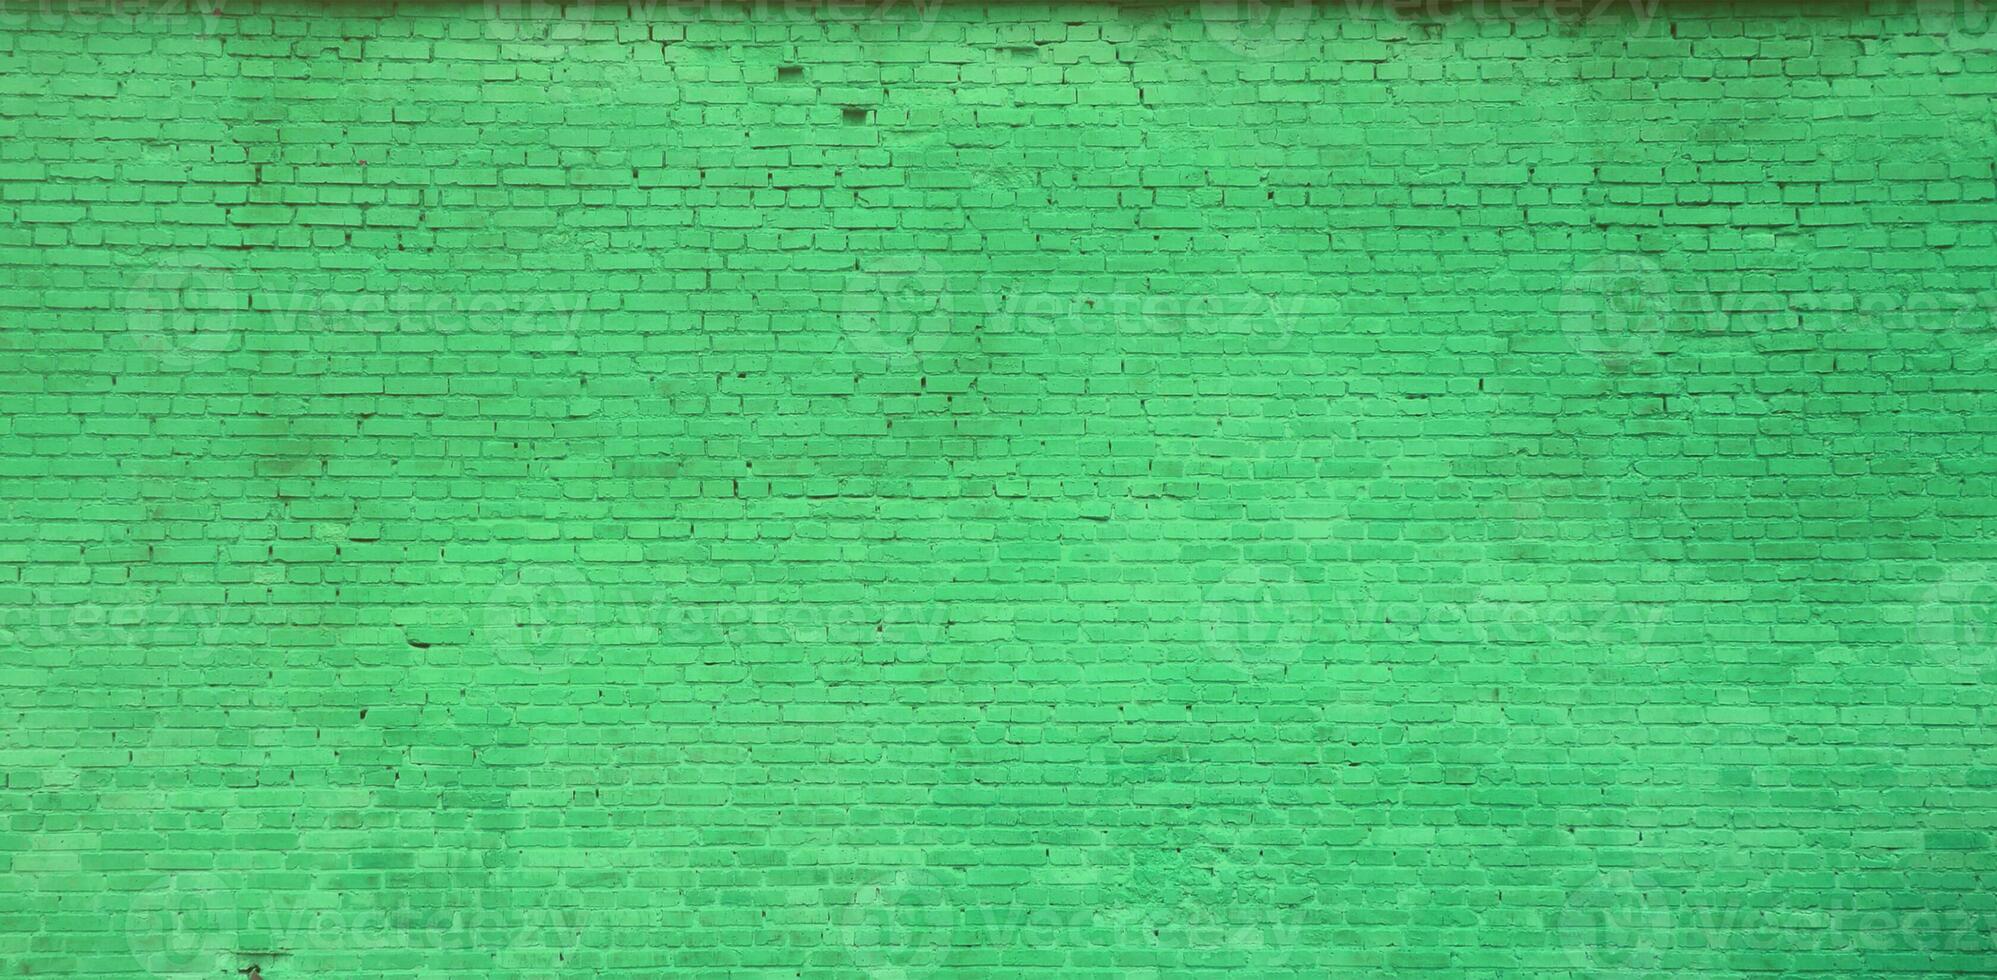 la texture du mur de briques de nombreuses rangées de briques peintes en vert photo